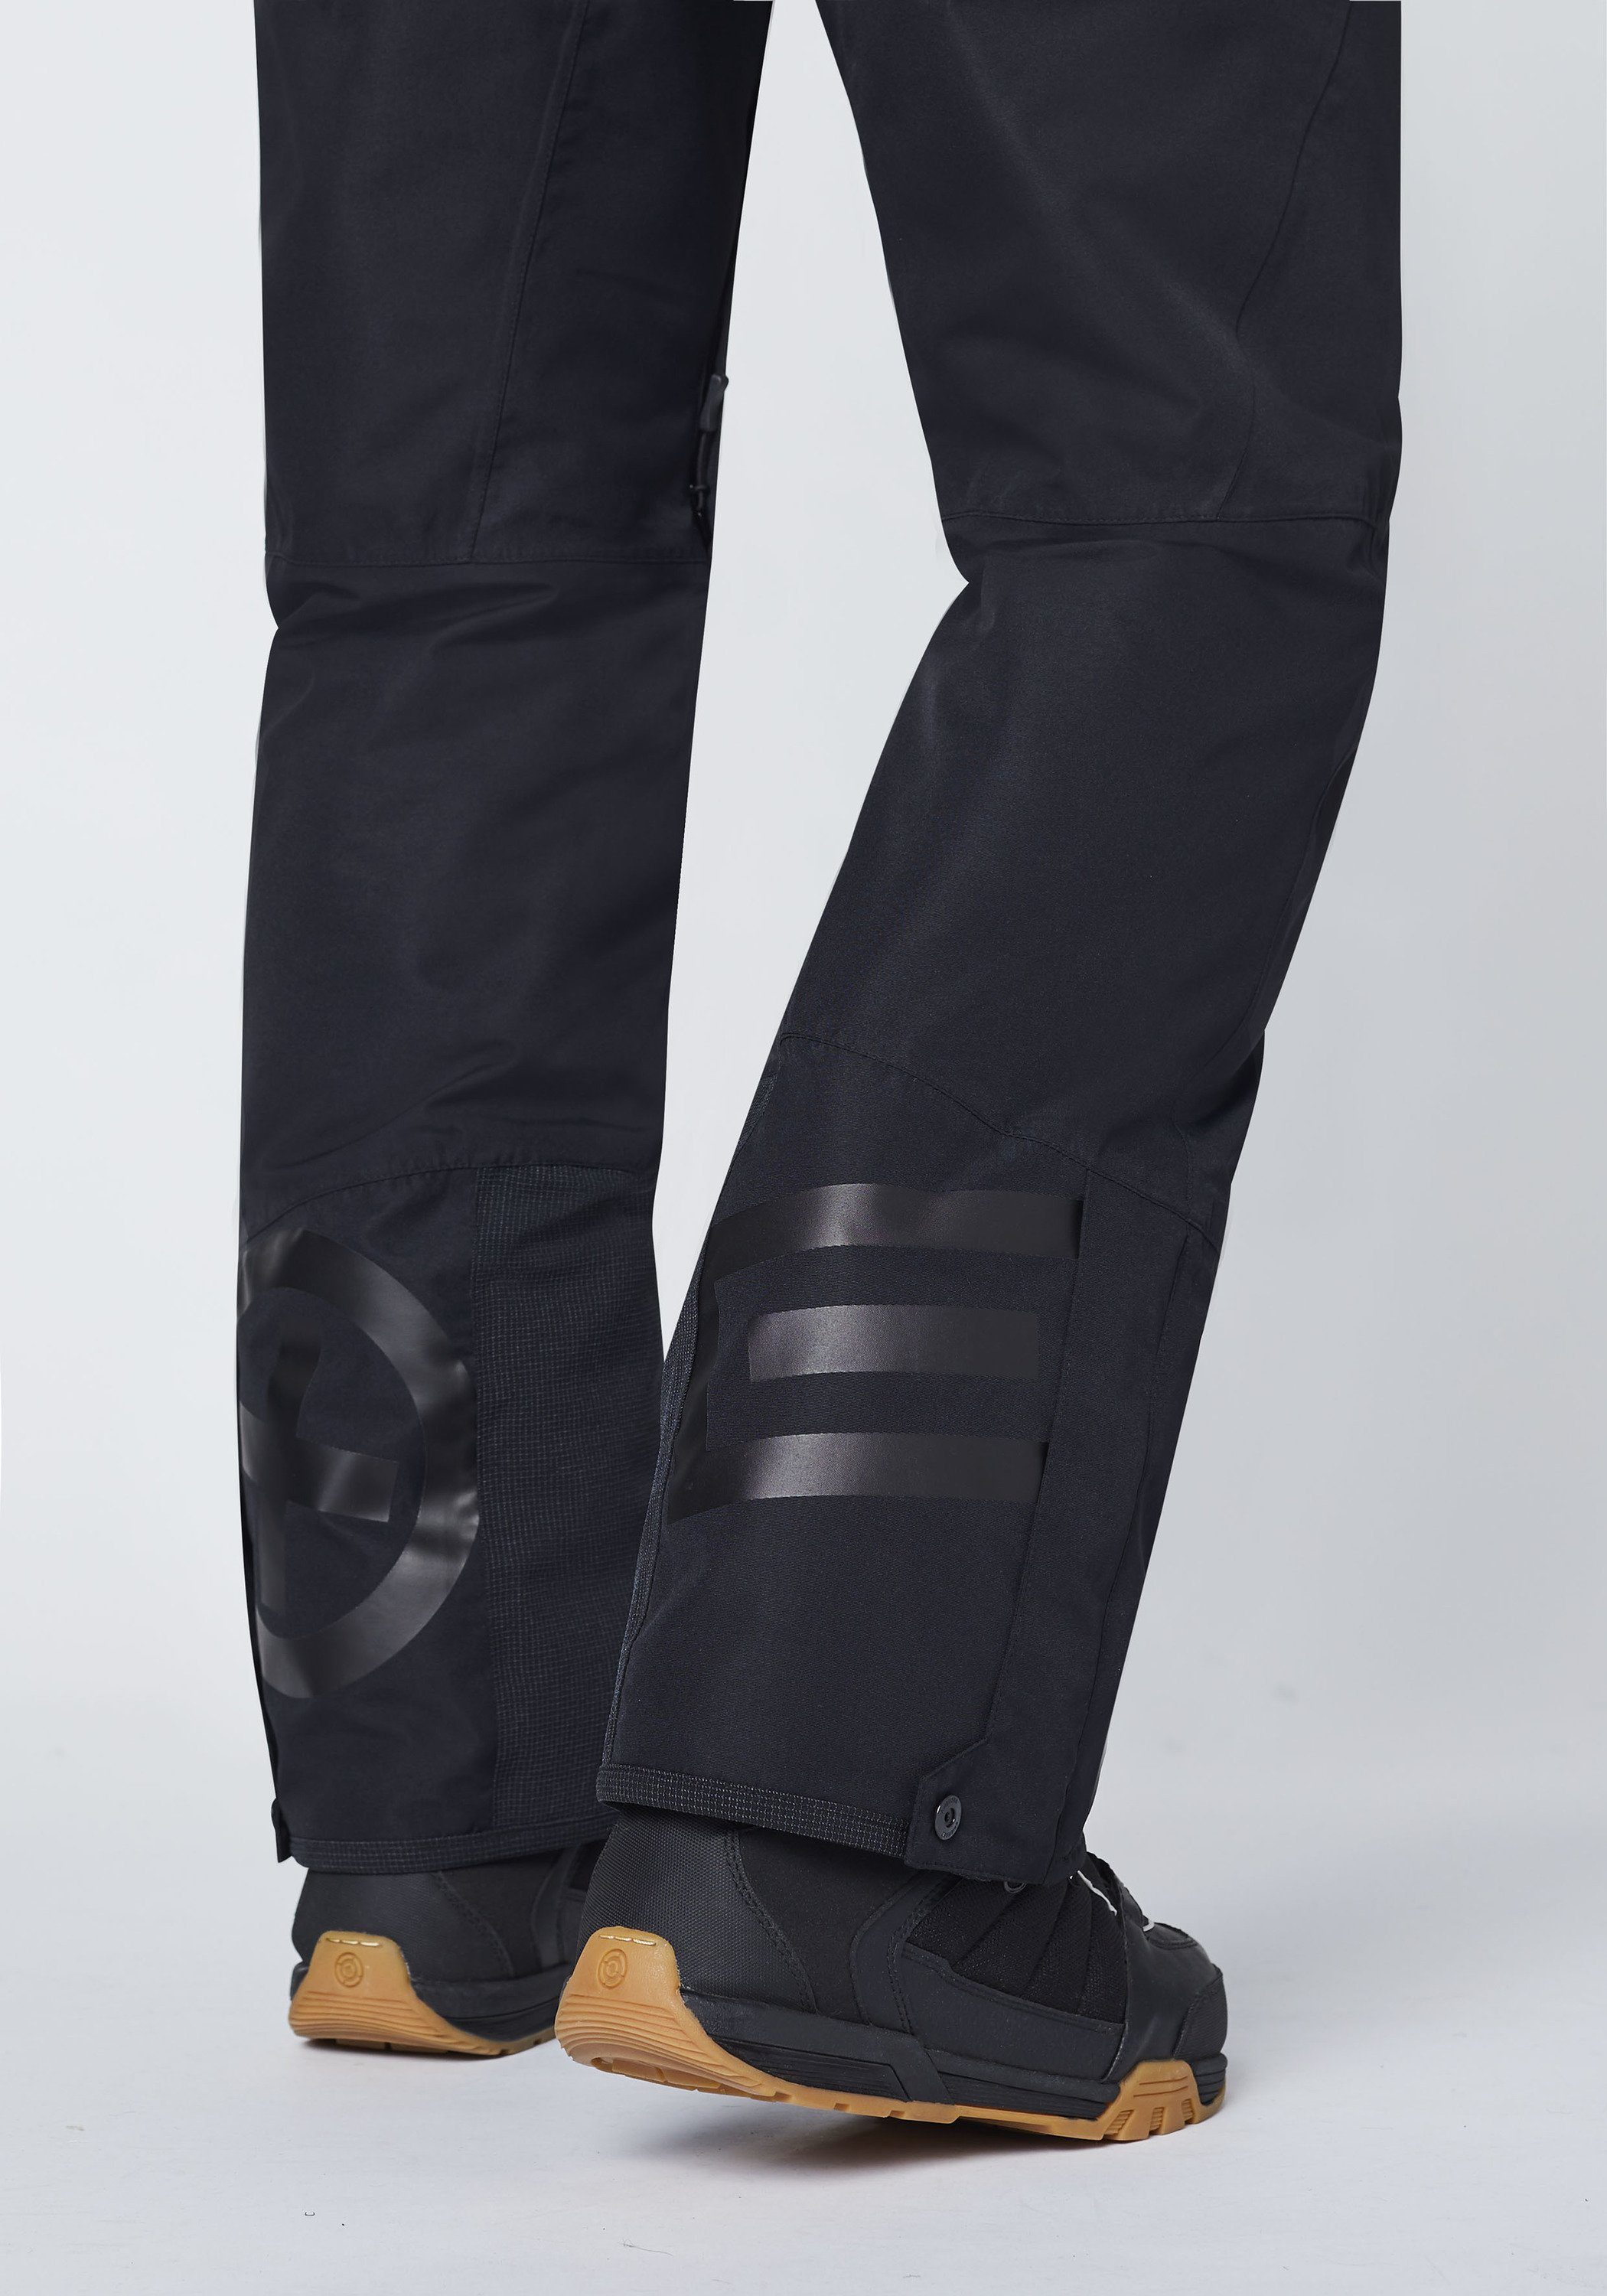 Chiemsee Sporthose Skihose mit Schneefang 1 schwarz/dunkel grau